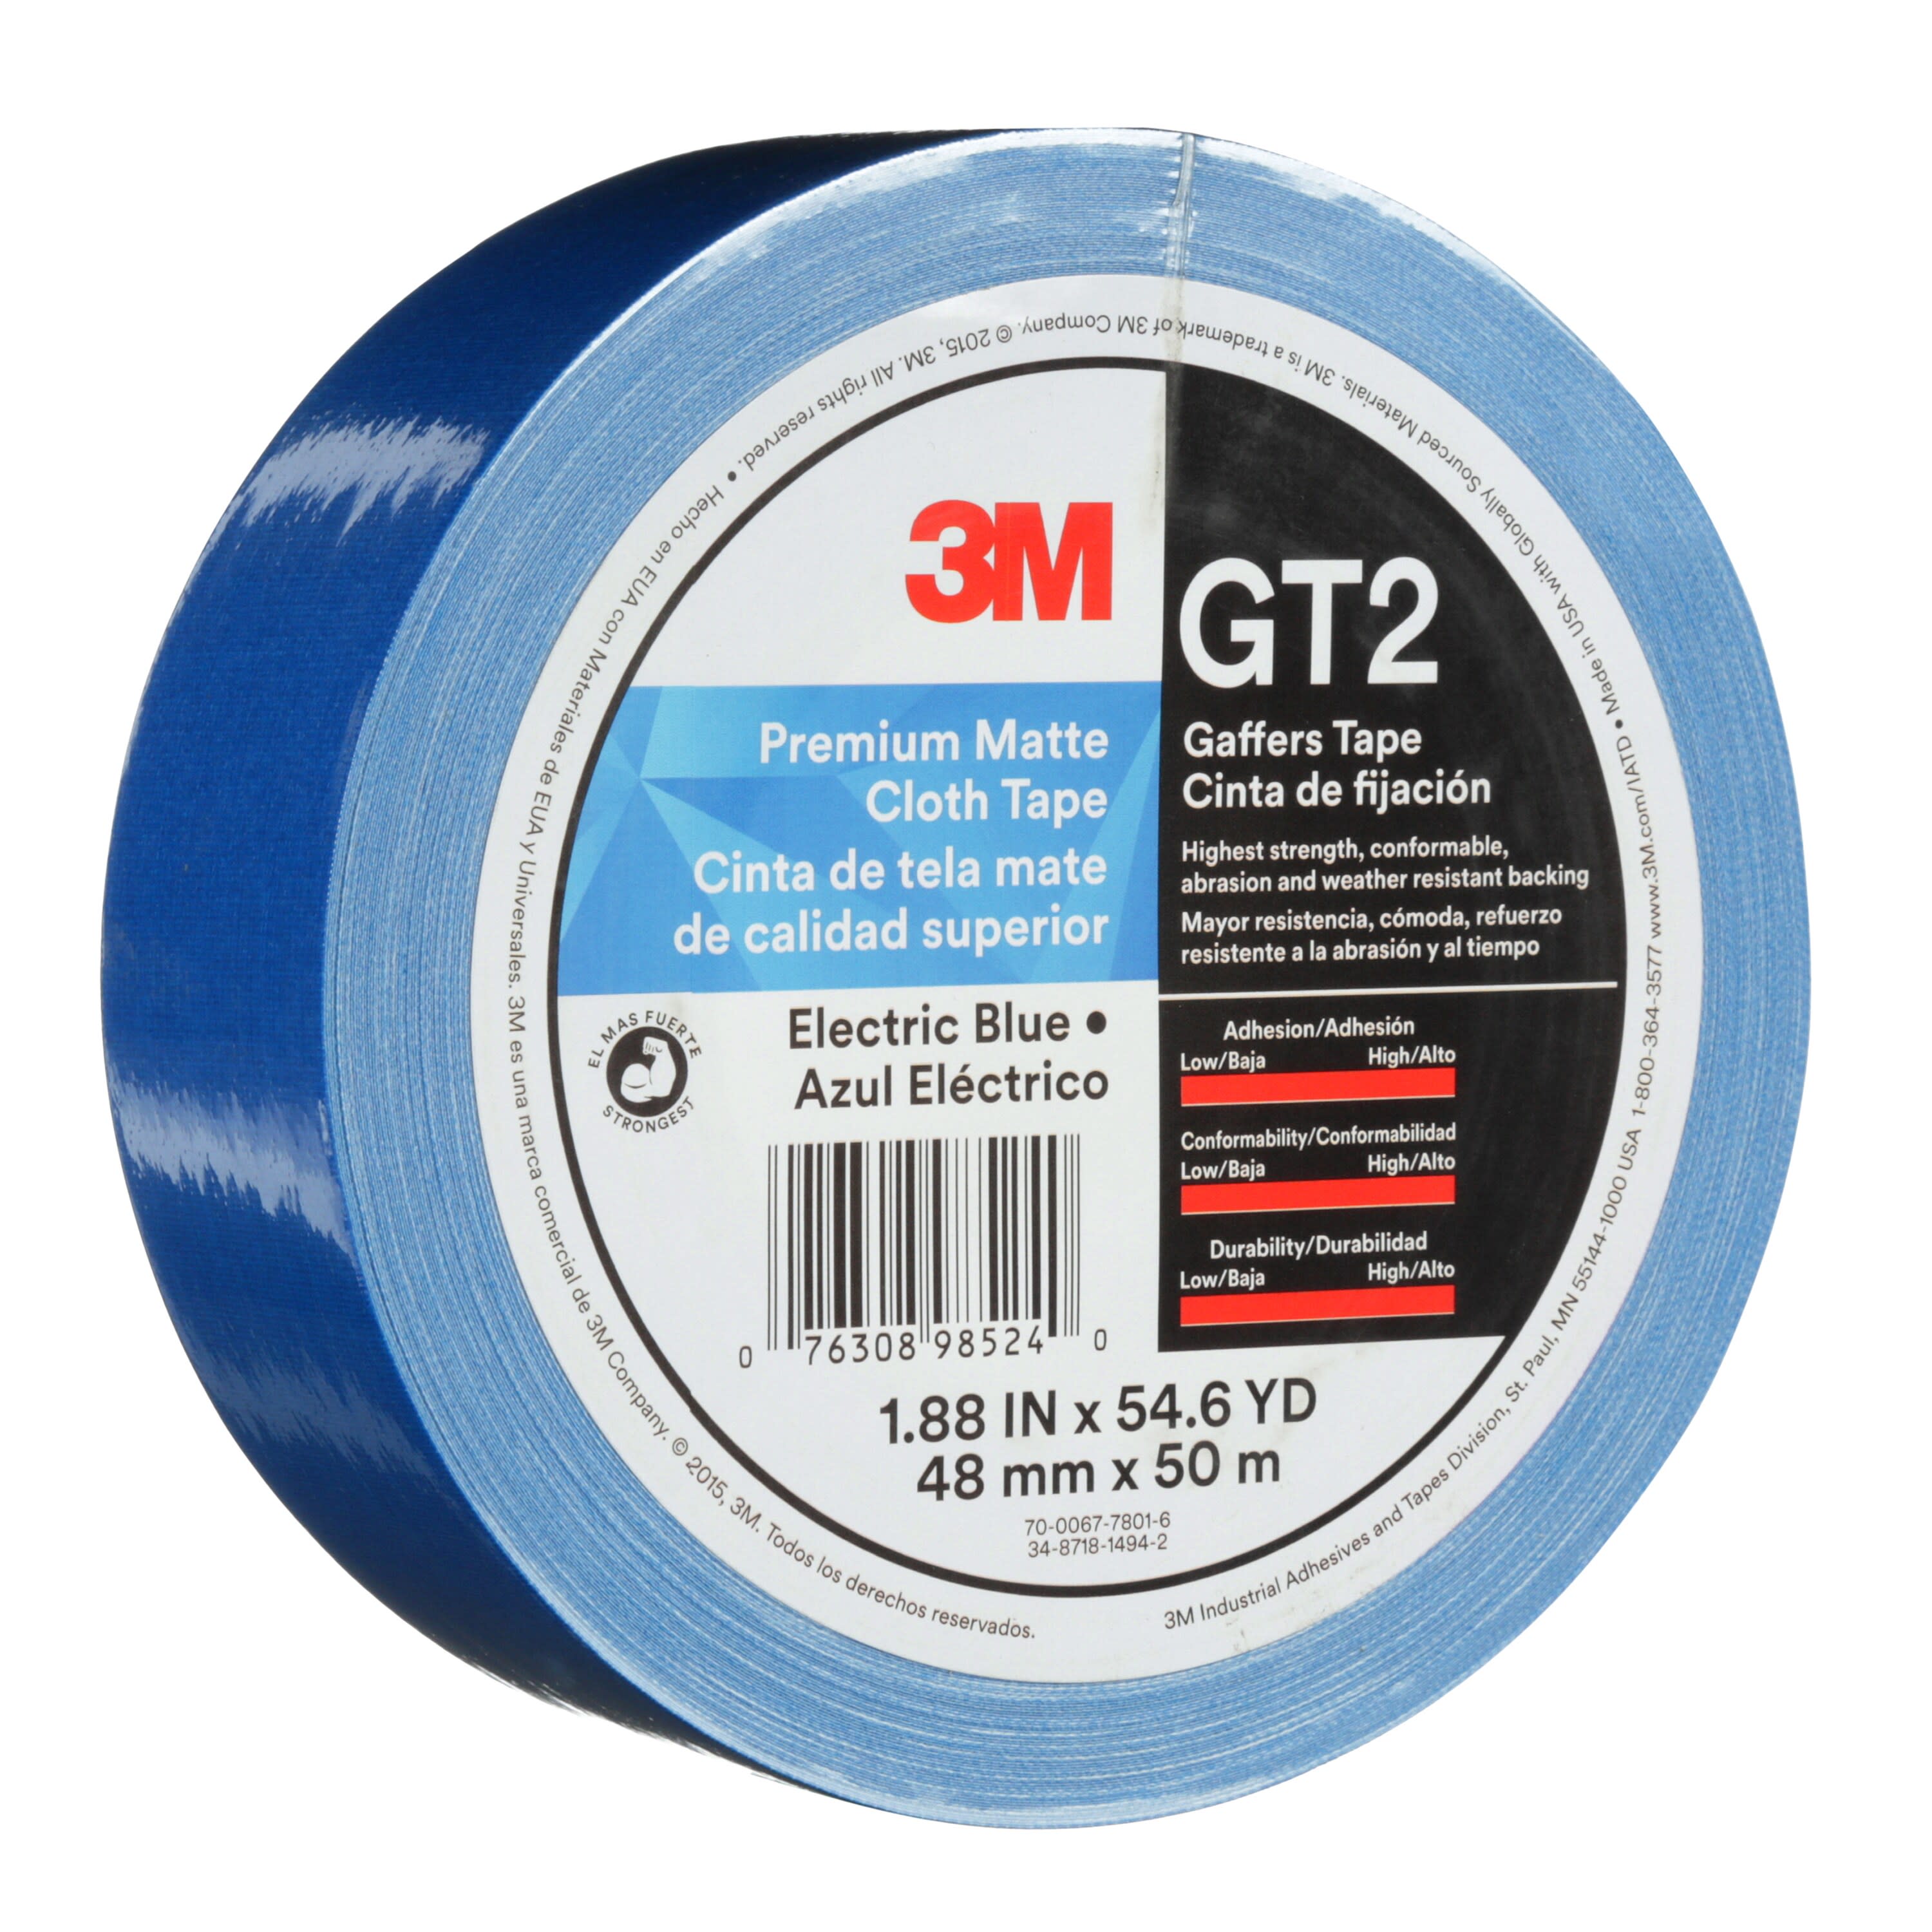 3M™ Premium Matte Cloth (Gaffers) Tape GT2, Electric Blue, 48 mm x 50 m,
11 mil, 24 per case